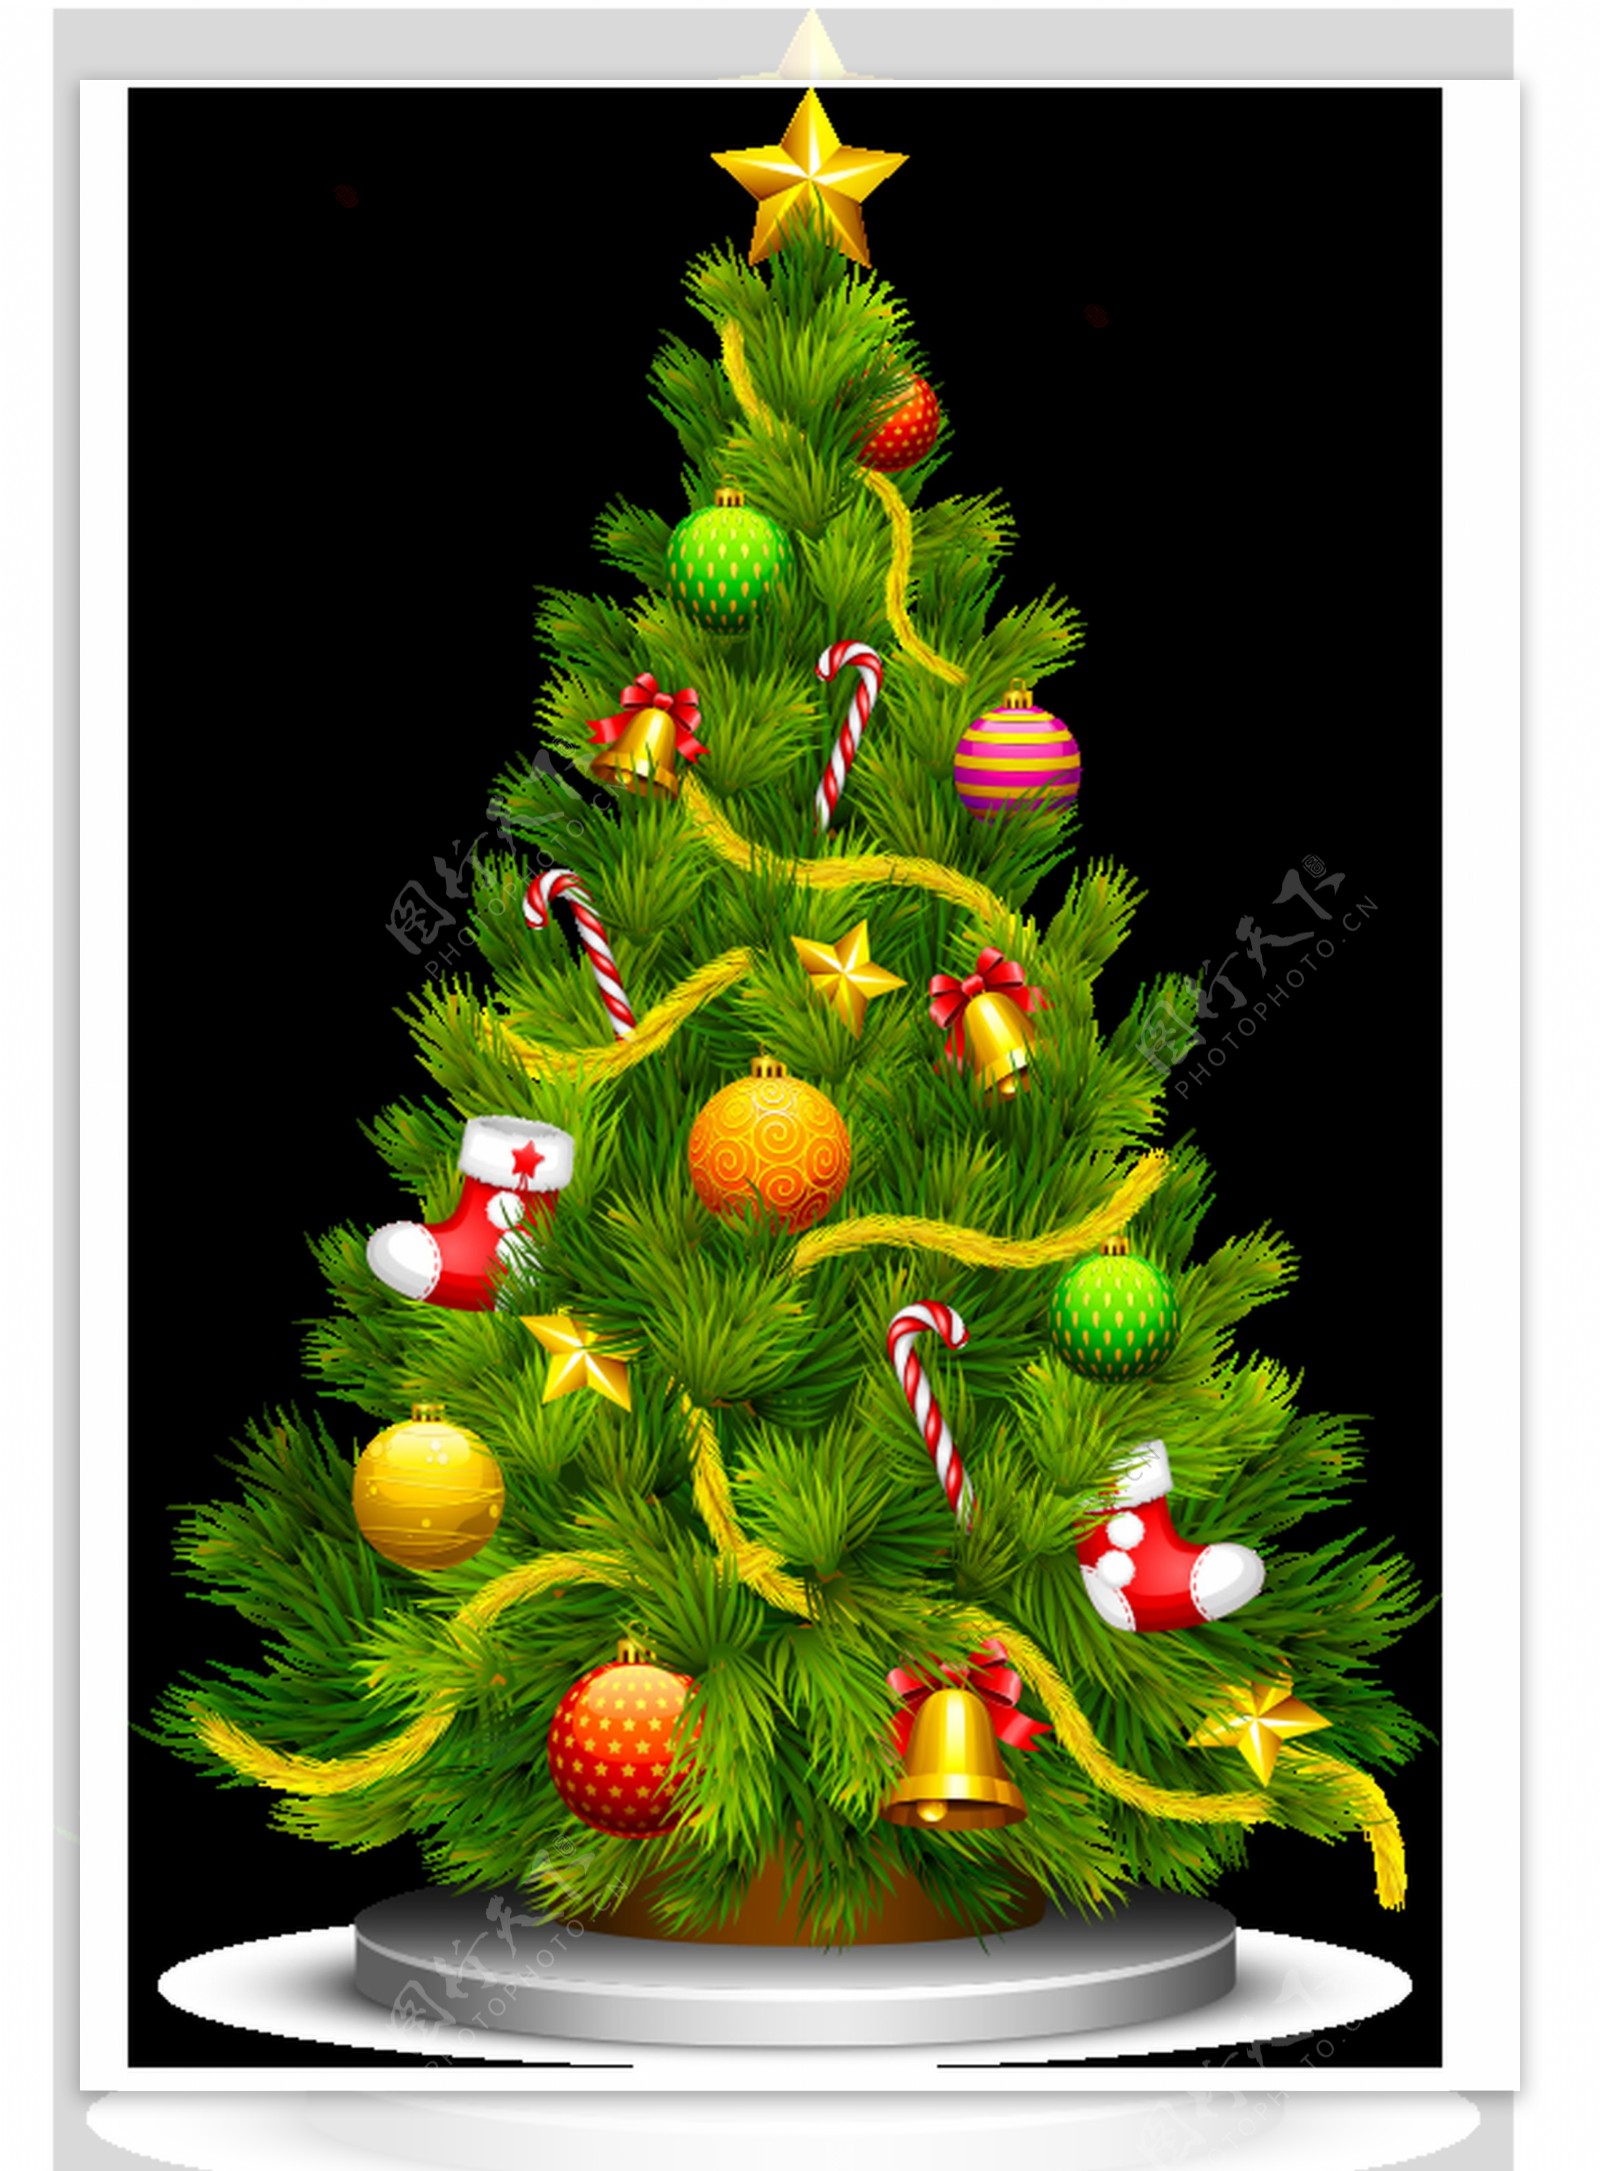 一棵挂着装饰品的圣诞树透明素材